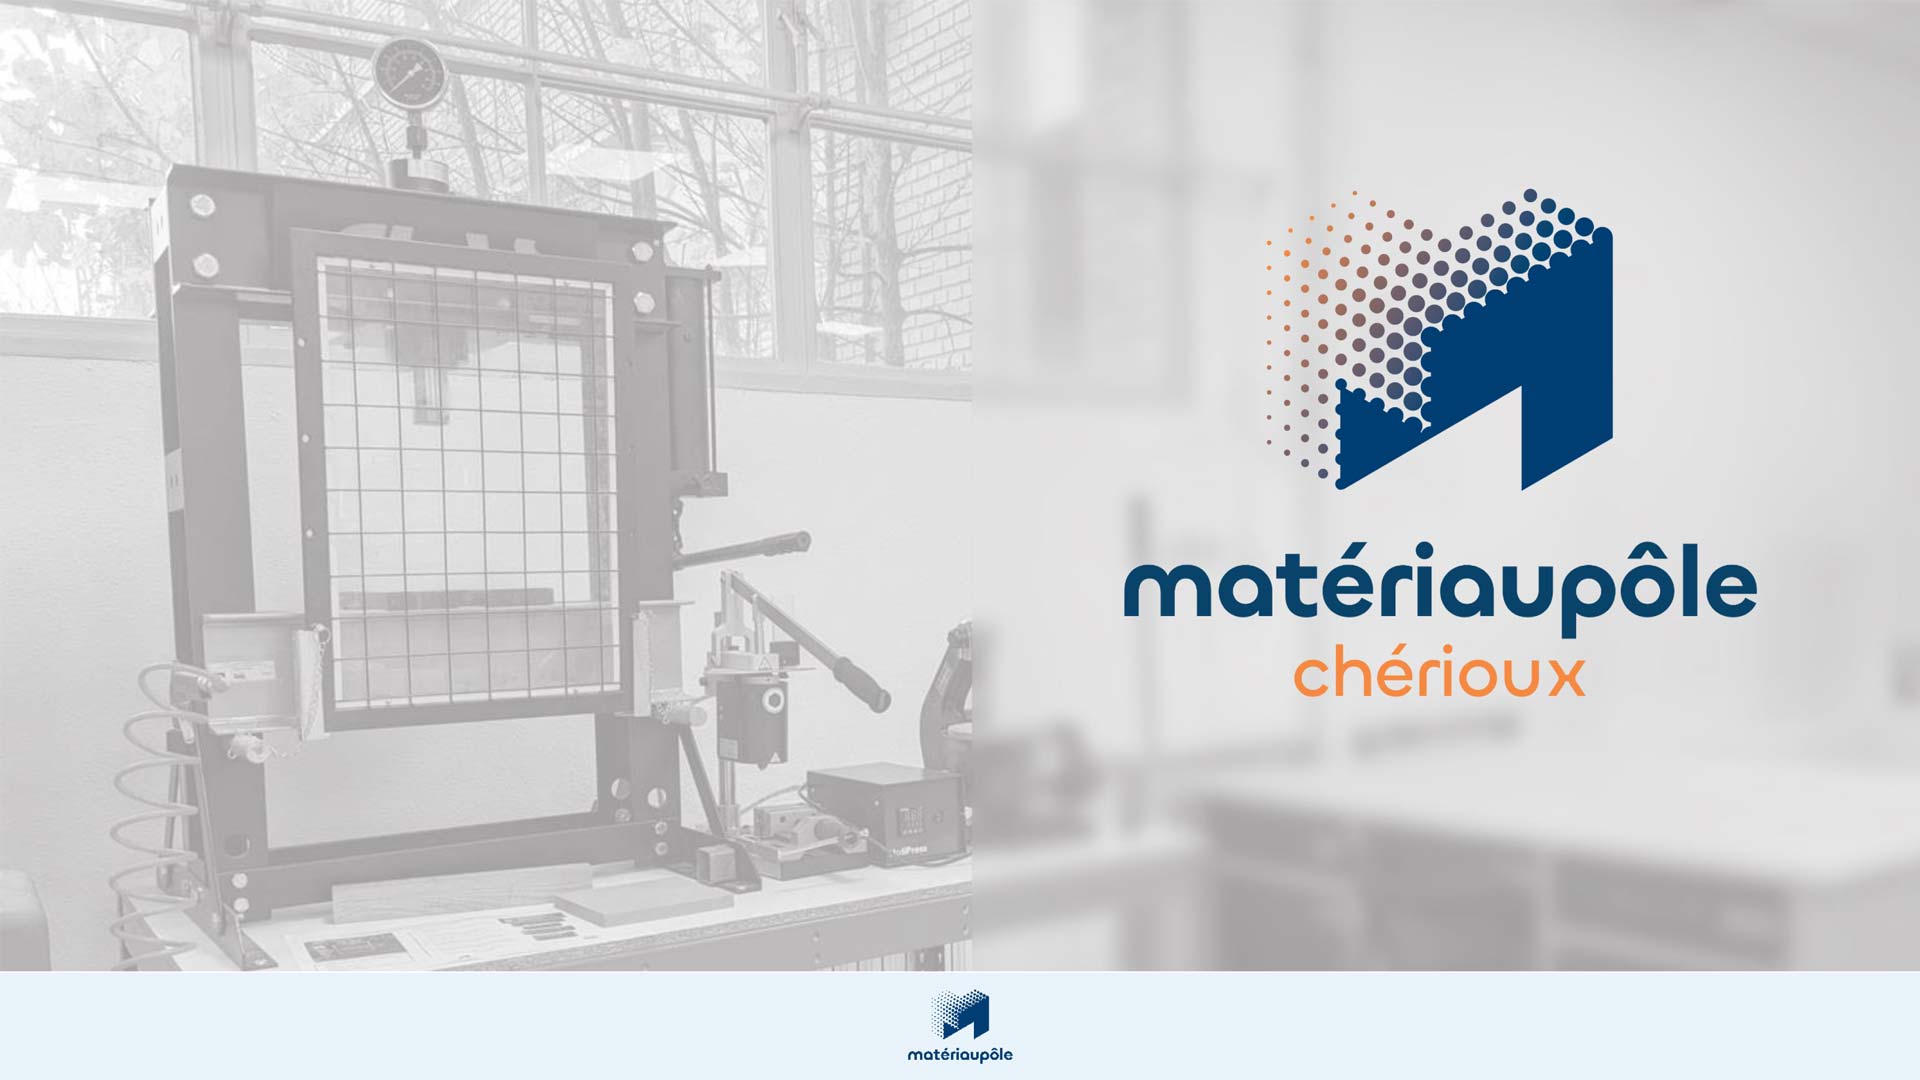 Matériaupôle Chérioux: boosting innovation for materials